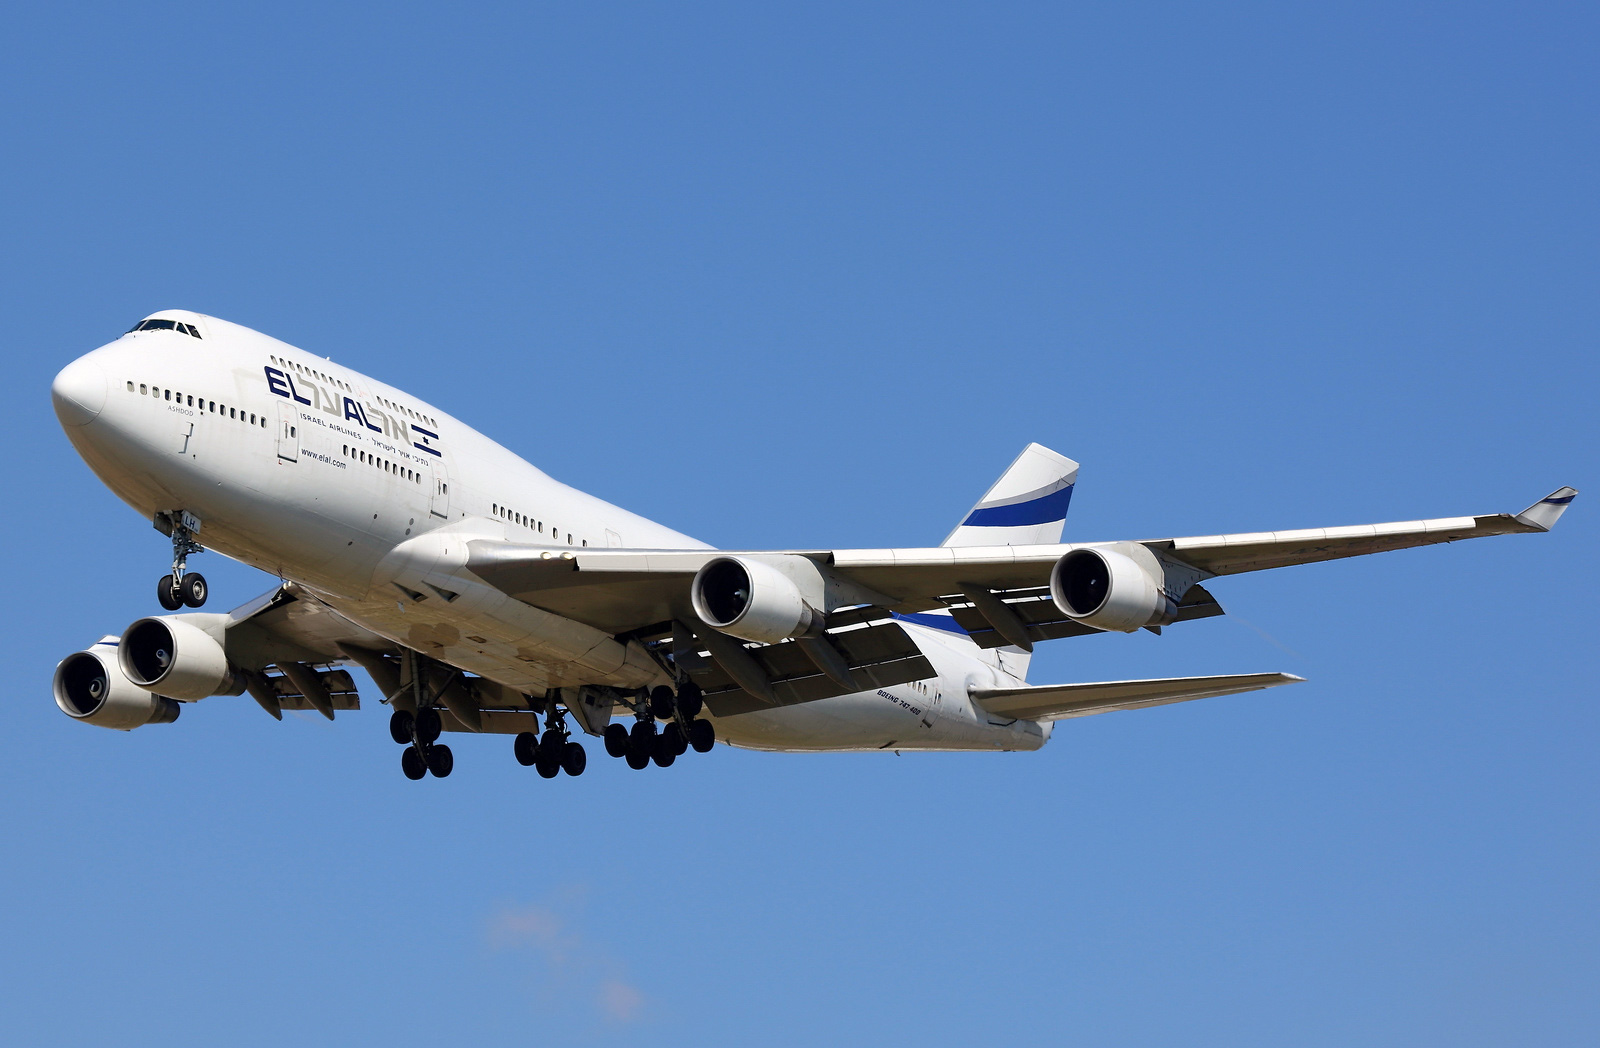 Boeing 747-400 El Al. Photos and description of the plane